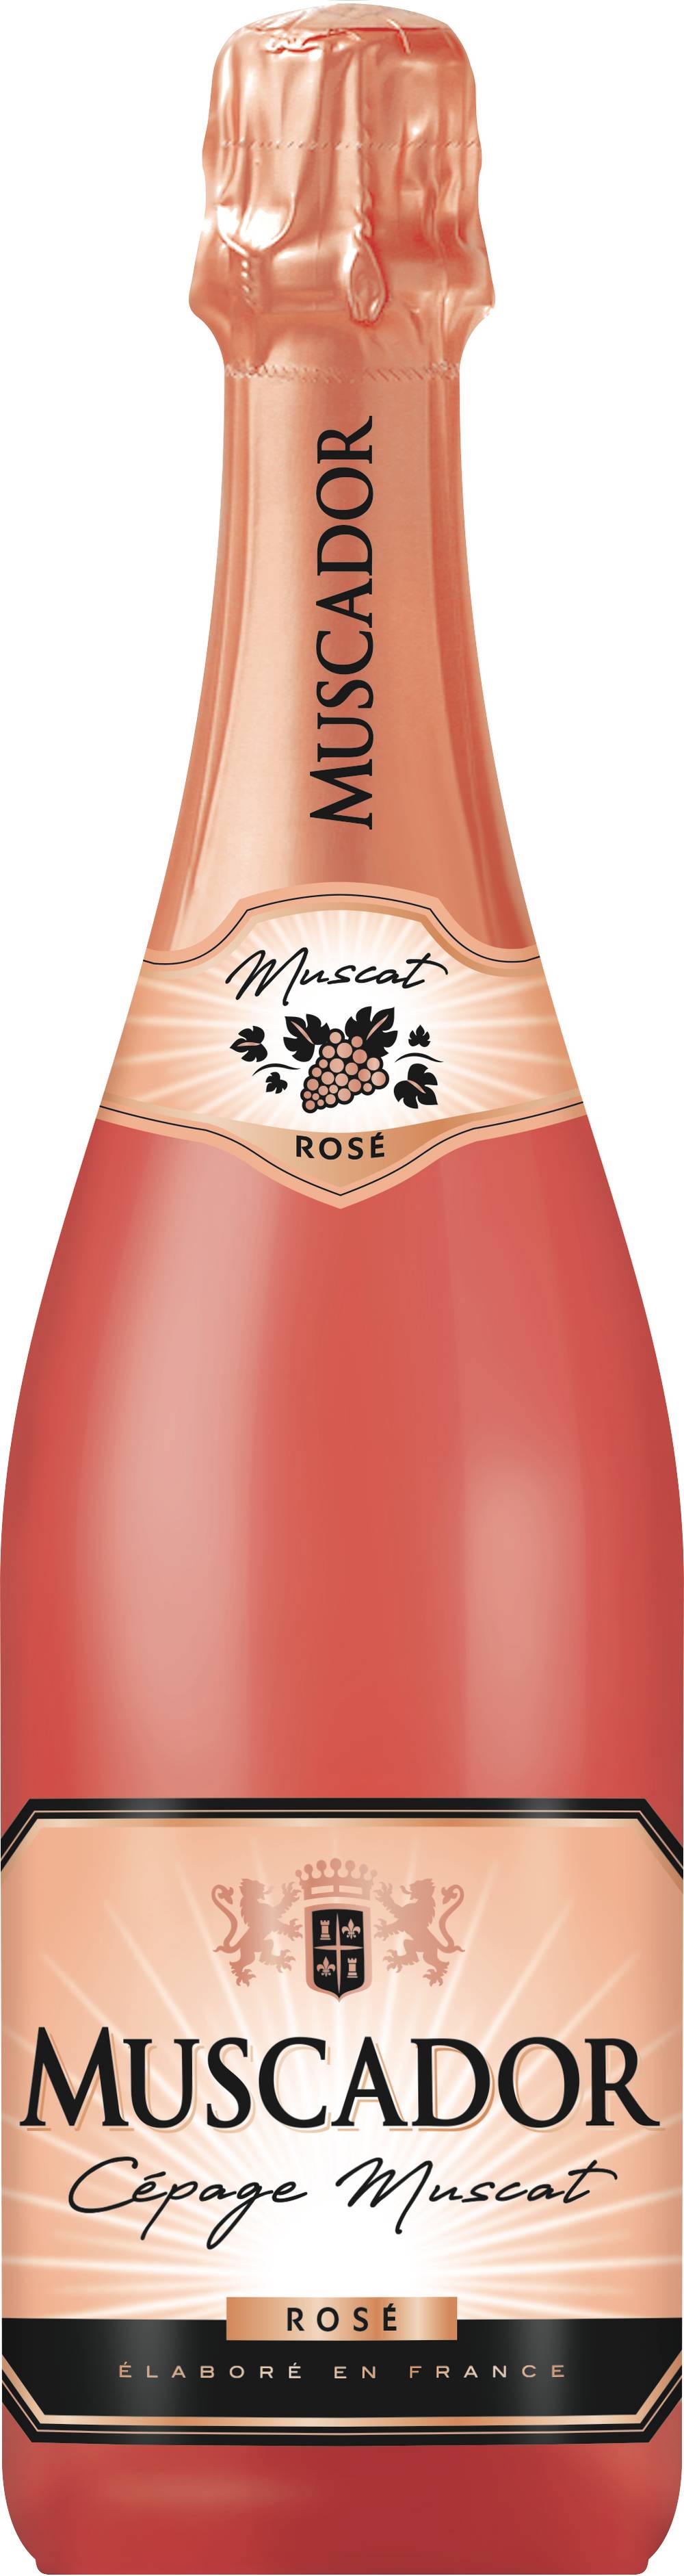 Muscador - Cépage muscat vin rosé domestique (750 ml)